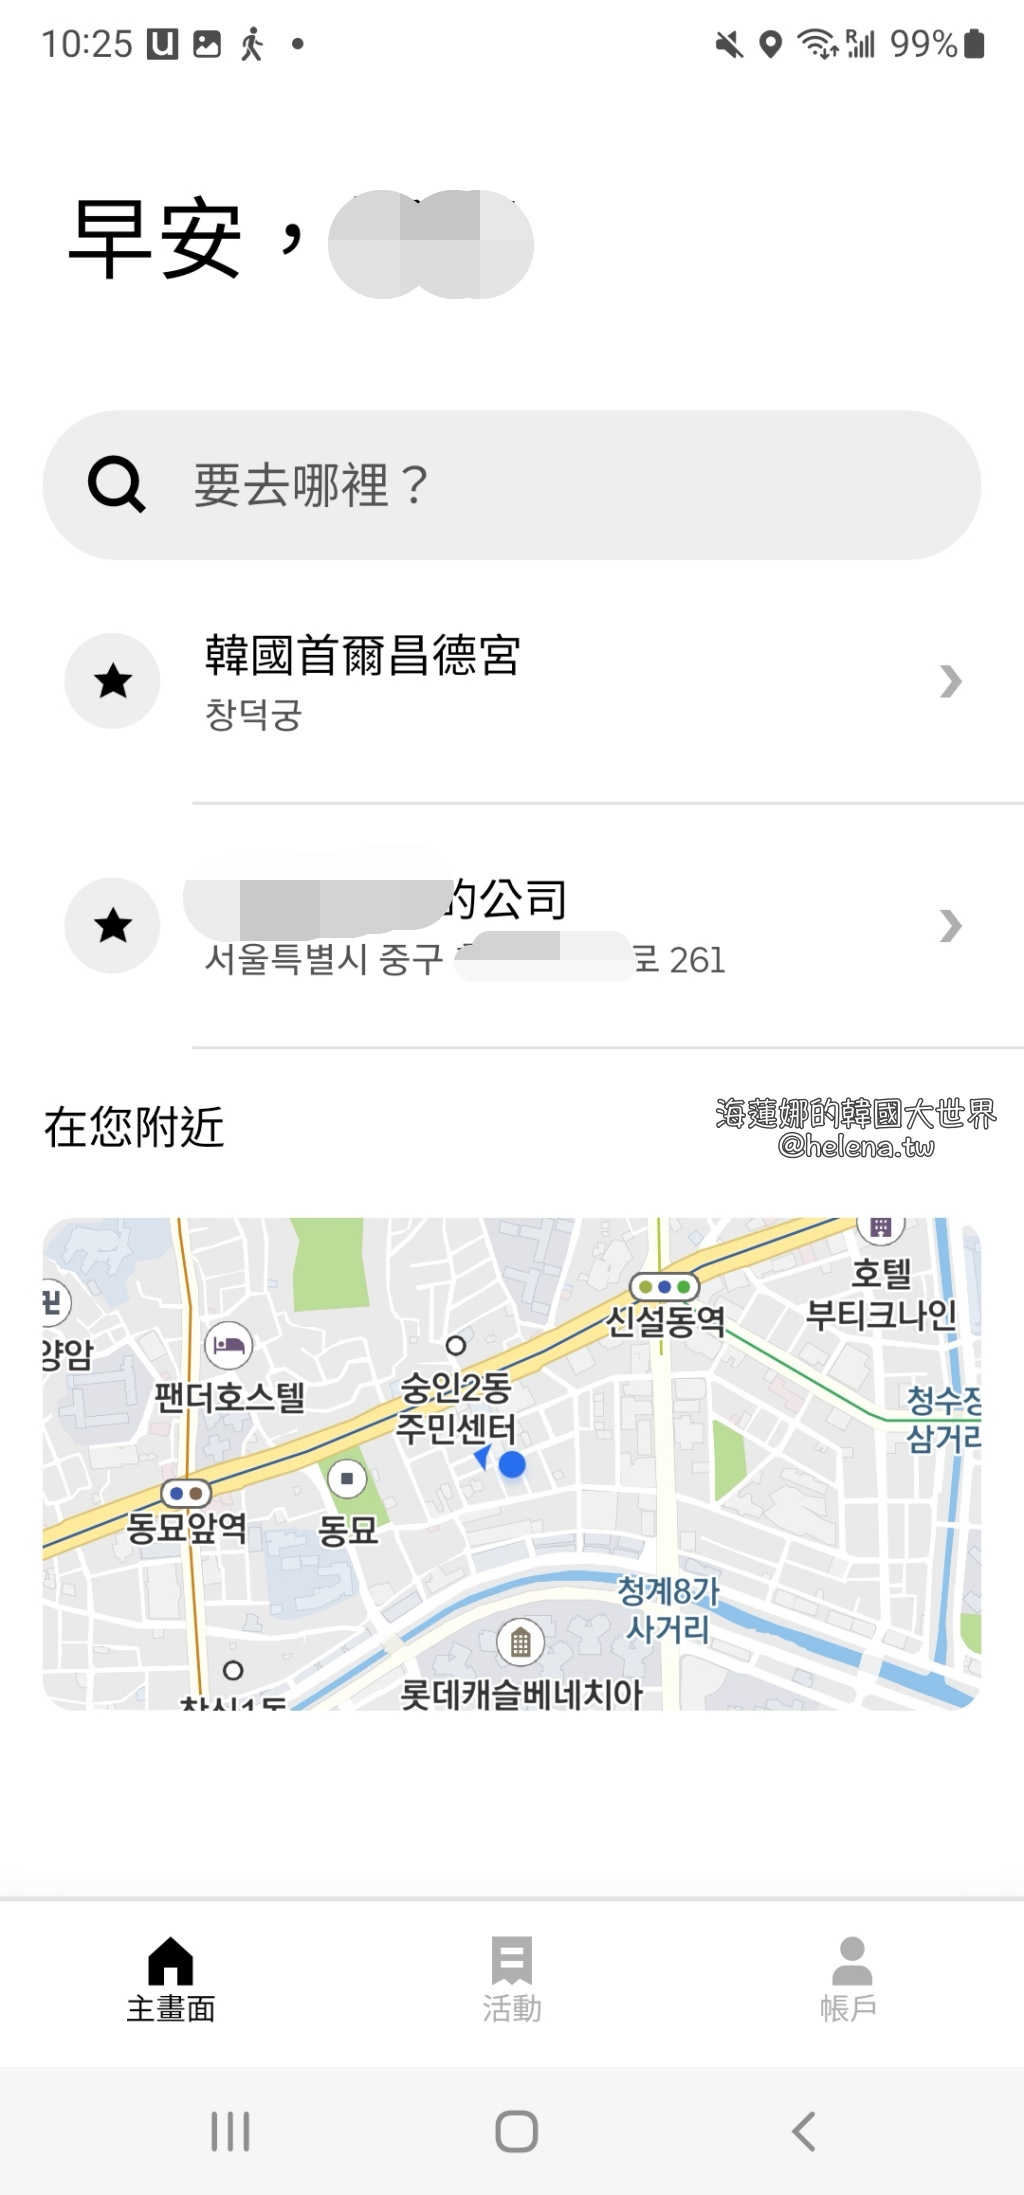 Uber中文介面,信用卡付款,叫車,大邱實用資訊,手機叫車,自助叫車,計程車,釜山實用資訊,韓國,韓國交通相關,韓國實用資訊,韓國旅行,韓國綜合,首爾實用資訊 @Helena's Blog